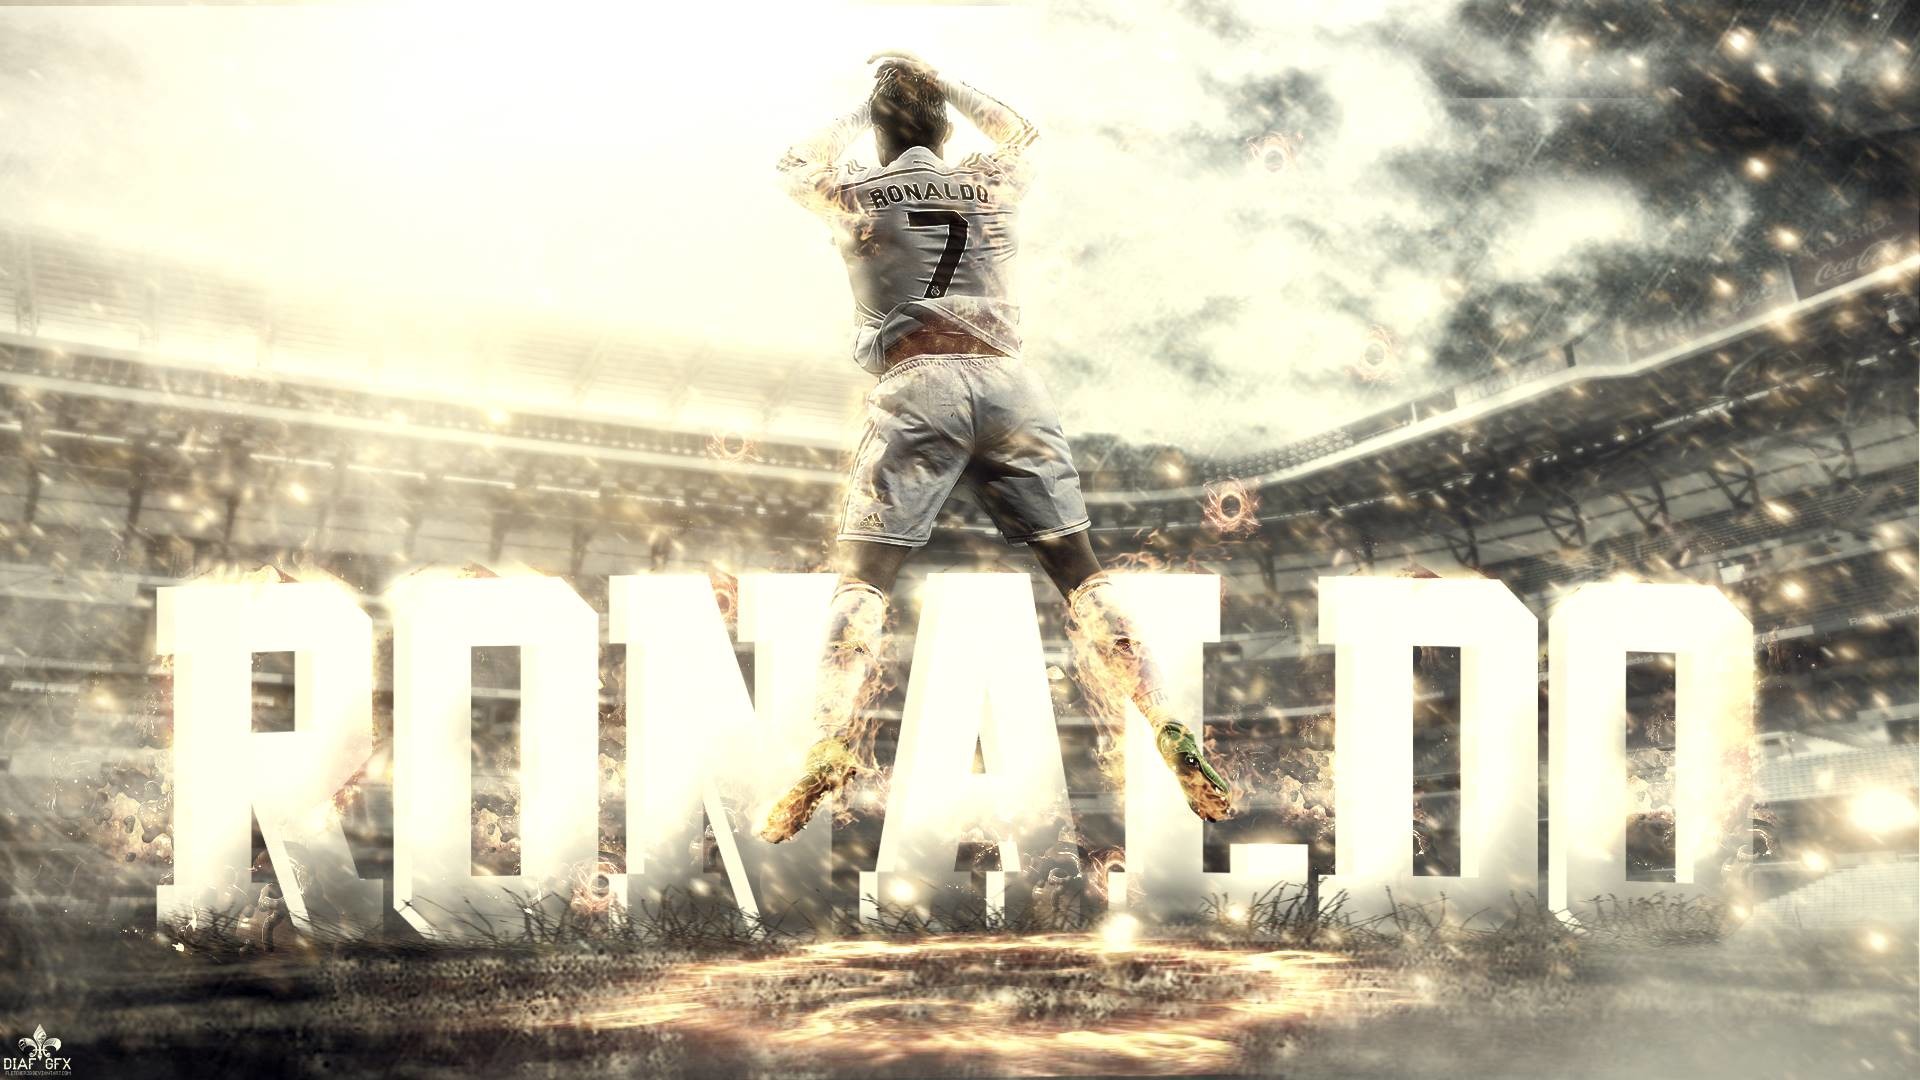 Hãy trang trí đồ điện tử của bạn với những hình nền CR7 đẹp nhất. Hình ảnh chất lượng cao mang đến một trải nghiệm thị giác tuyệt vời cho người dùng đến từ người hâm mộ của Ronaldo. Hãy tải xuống và chia sẻ những hình ảnh đẹp này đến với bạn bè của bạn.